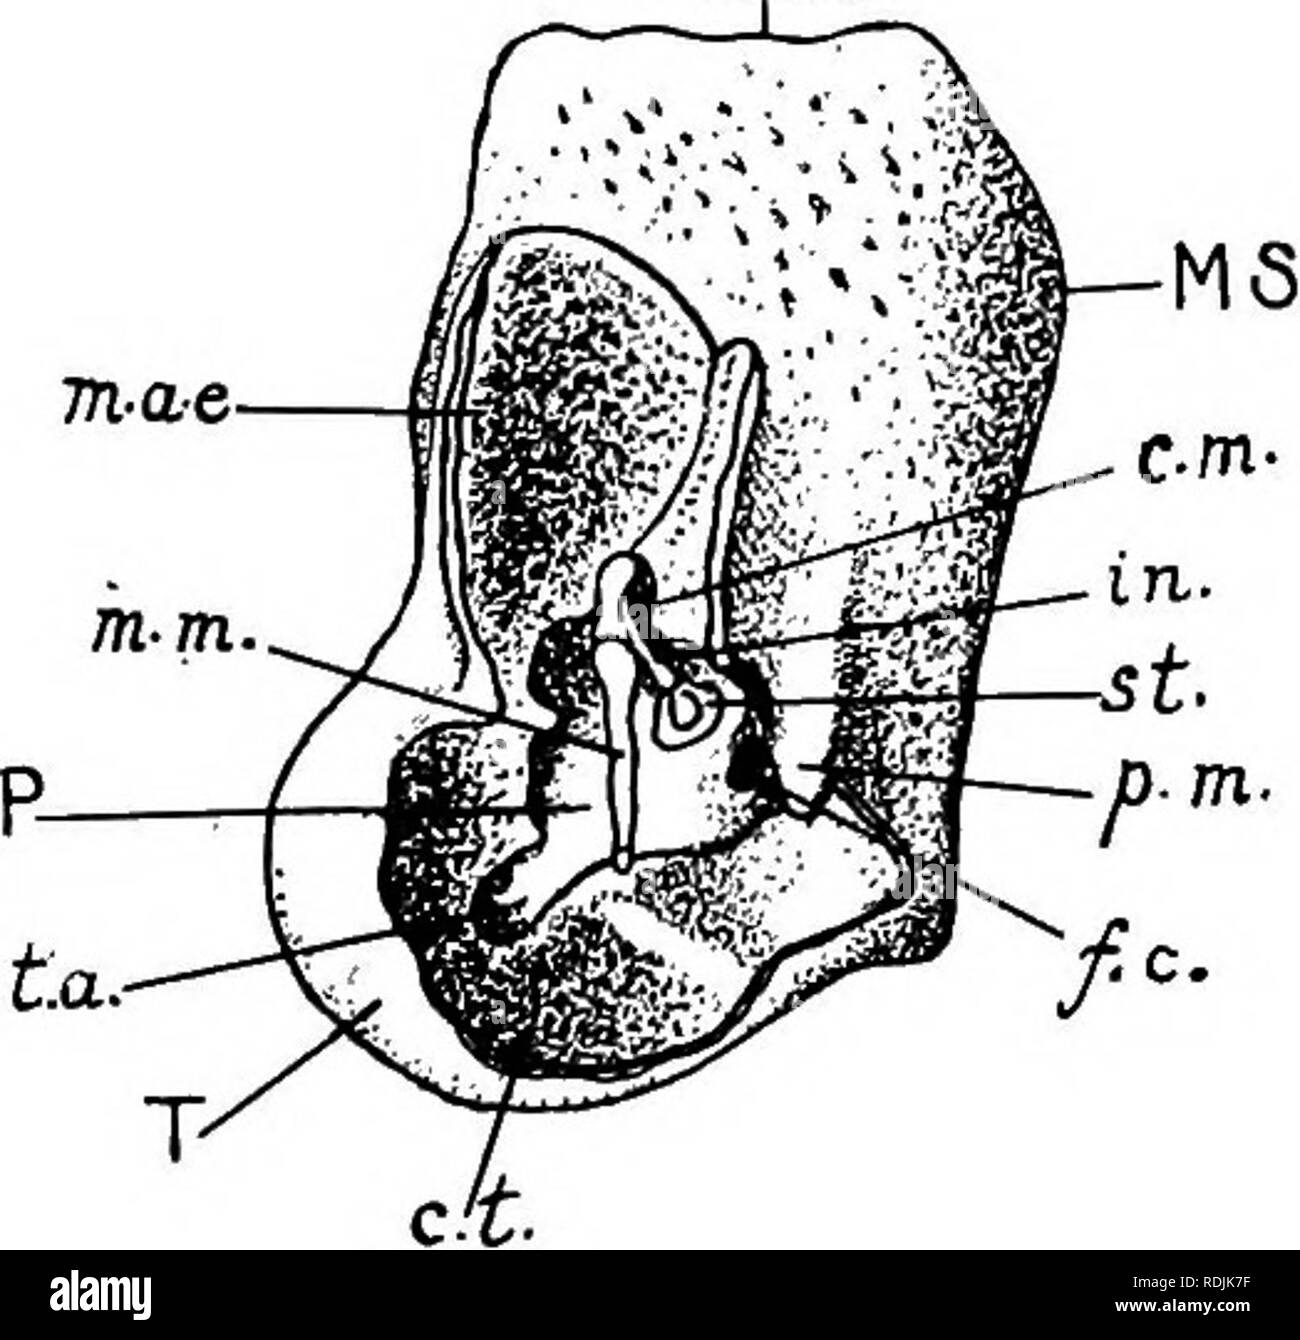 . Anatomia pratica del coniglio : un laboratorio elementare textbook in cellule di mammifero anatomia . Conigli; anatomia di confronto. Le ossa del cranio. 147 m. condotto uditivo esterno. Il confine tra i due è indicato,esternamente da un profondo solco obliquo, la cui posizione indica approssimativamente che della membrana timpanica all'interno. Il margine medioventral dell'osso è articolato con la basi- occipitale, ma la parte rigonfia è separato da questi ultimi da un ampia scanalatura terminando posteriormente nella fossa giugulare e il forame giugulare. Immediatamente di fronte la fo giugulare Foto Stock